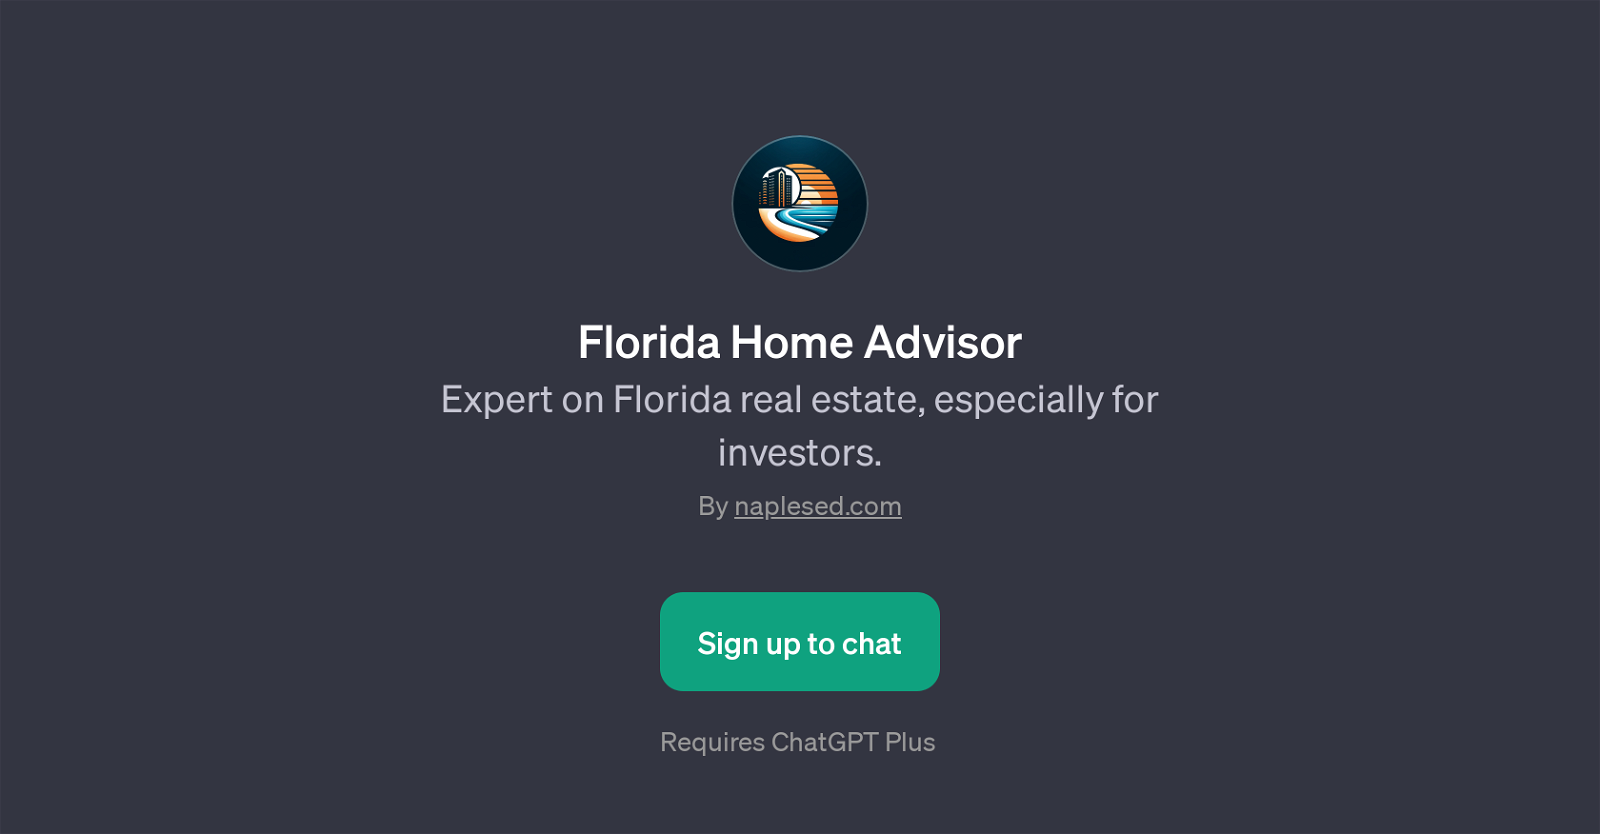 Florida Home Advisor website